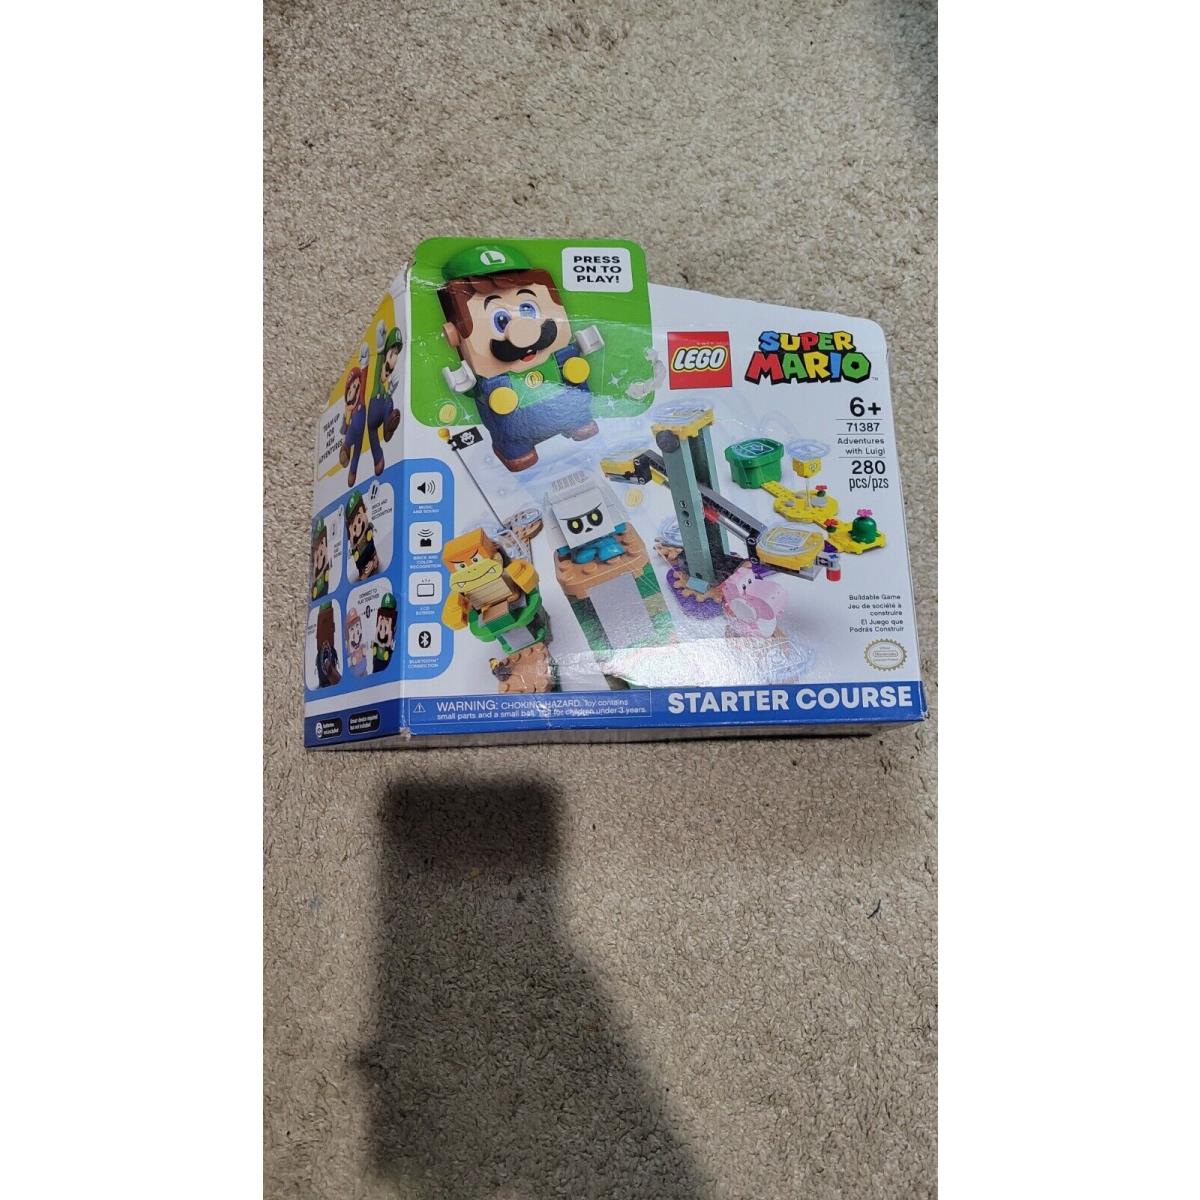 Lego 71387 Super Mario Adventures with Luigi